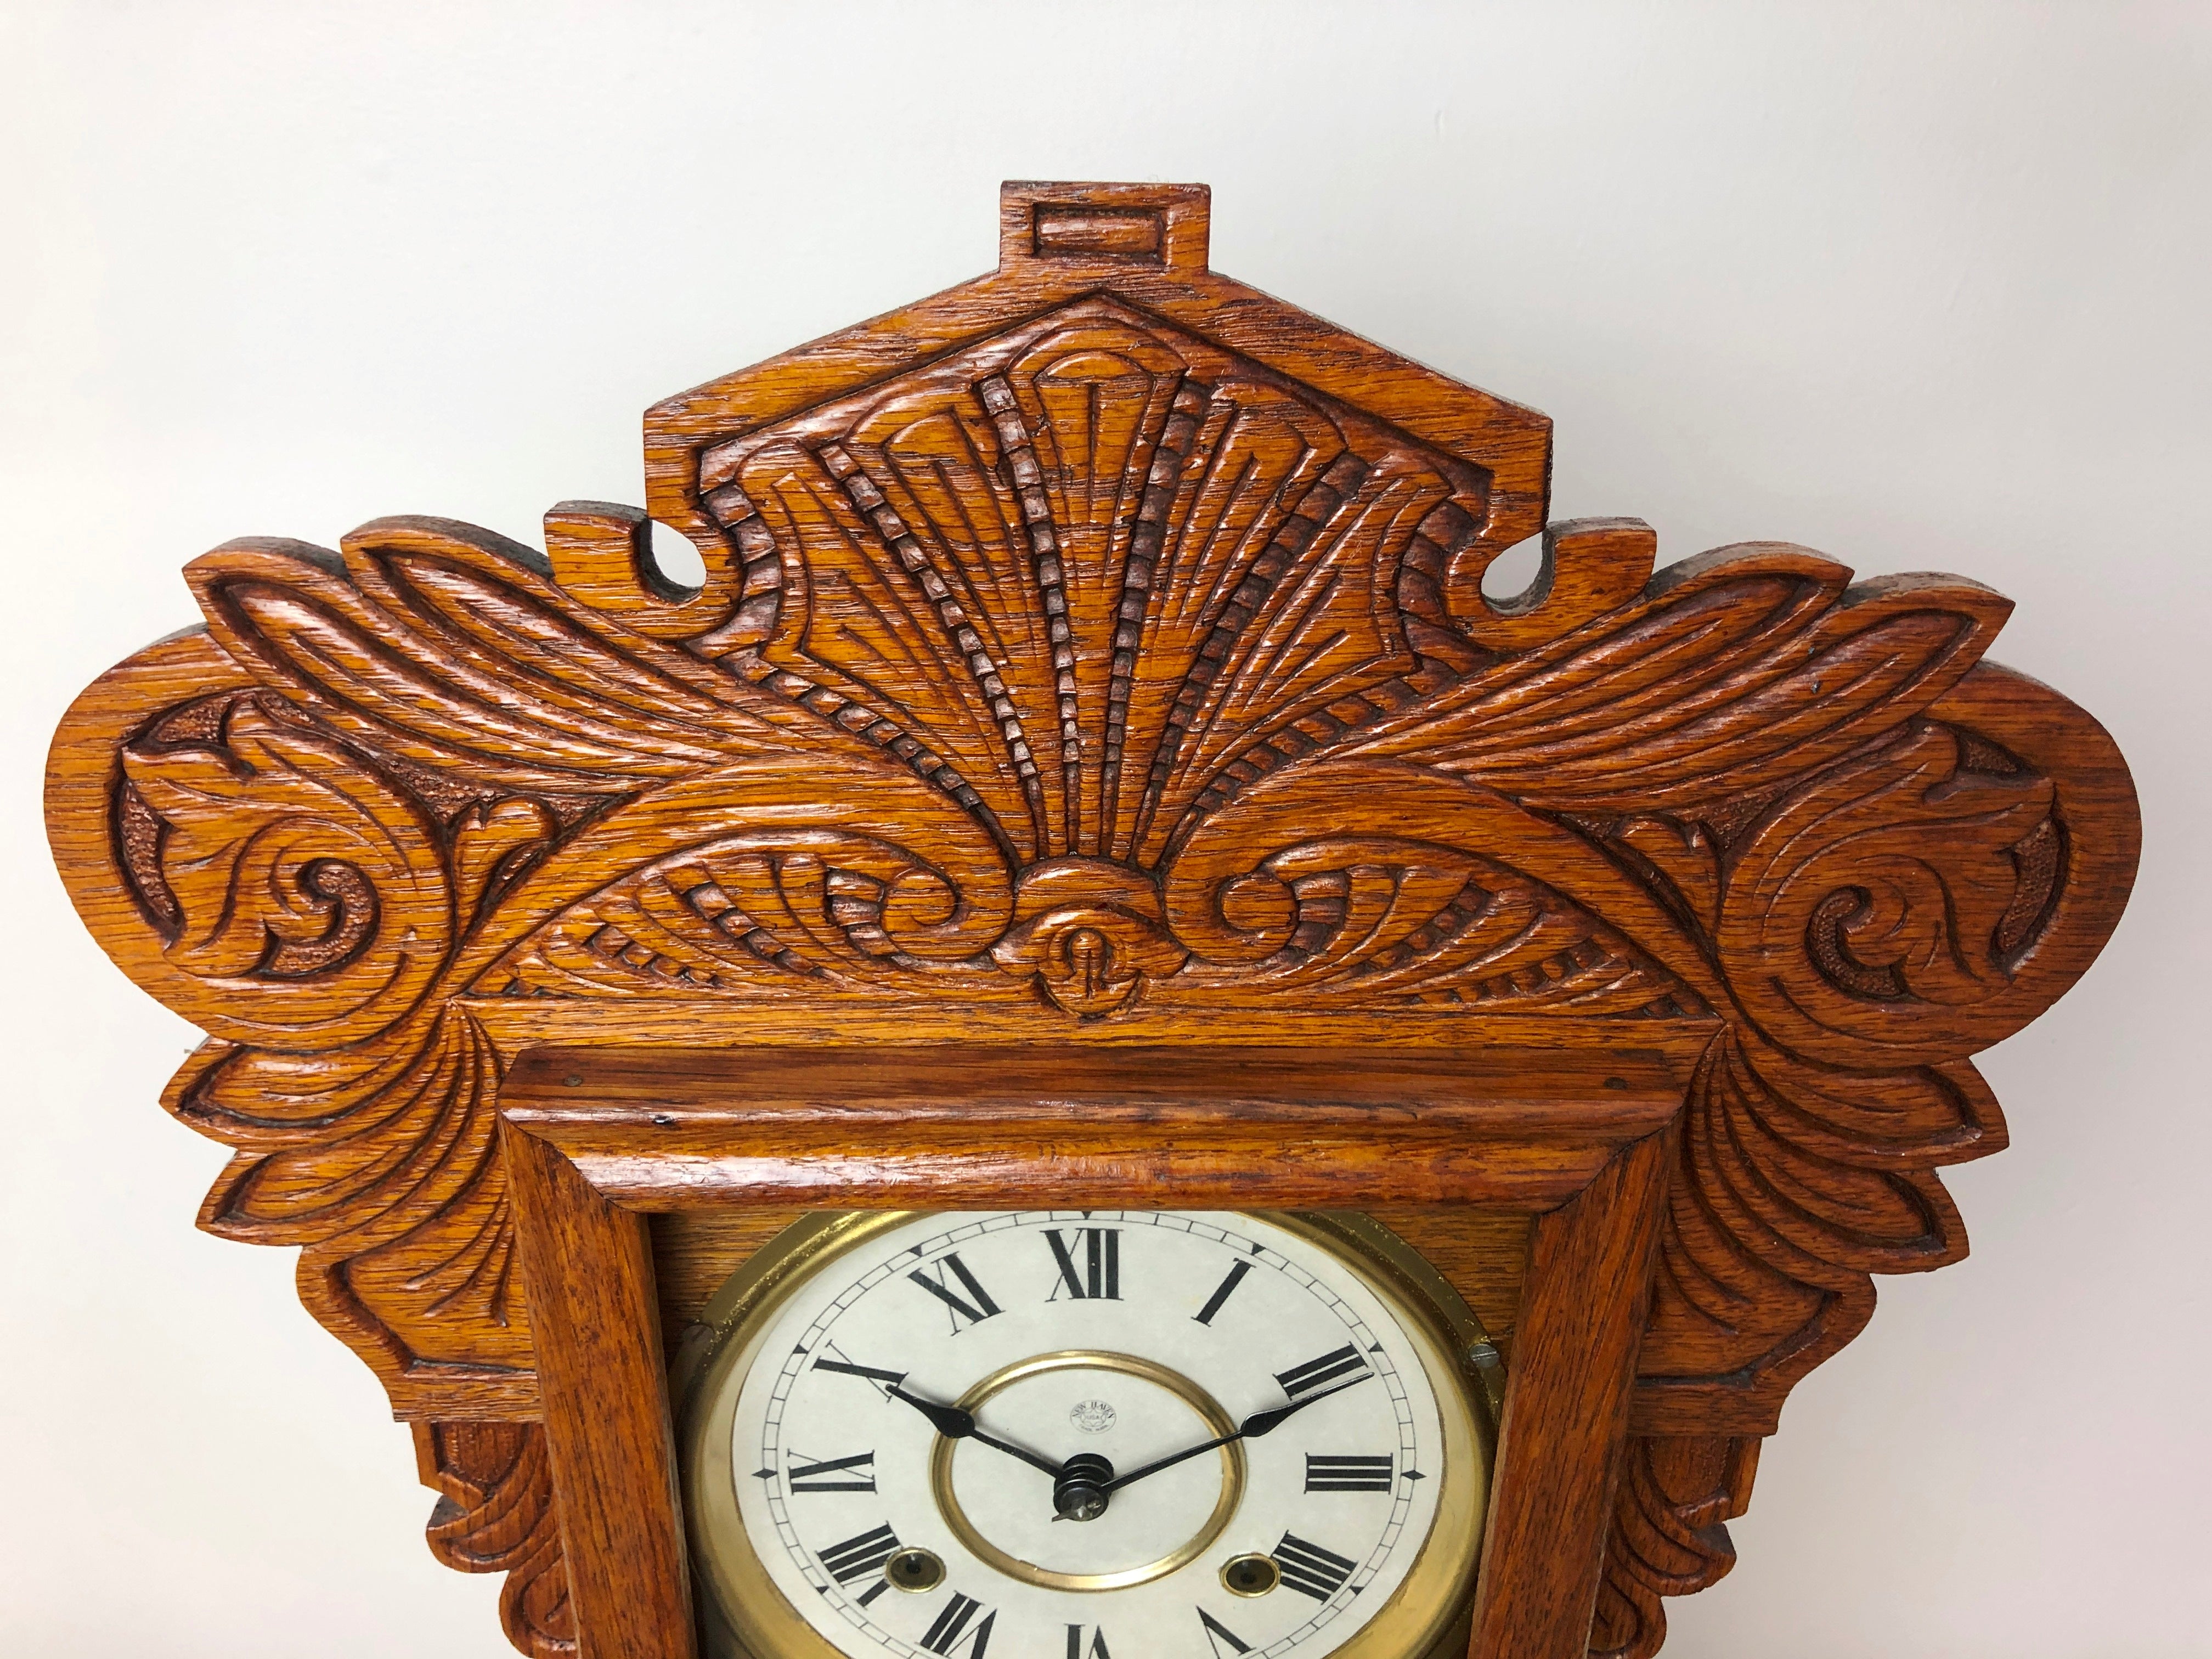 Antique NEW HAVEN Cottage Mantel Clock | eXibit collection